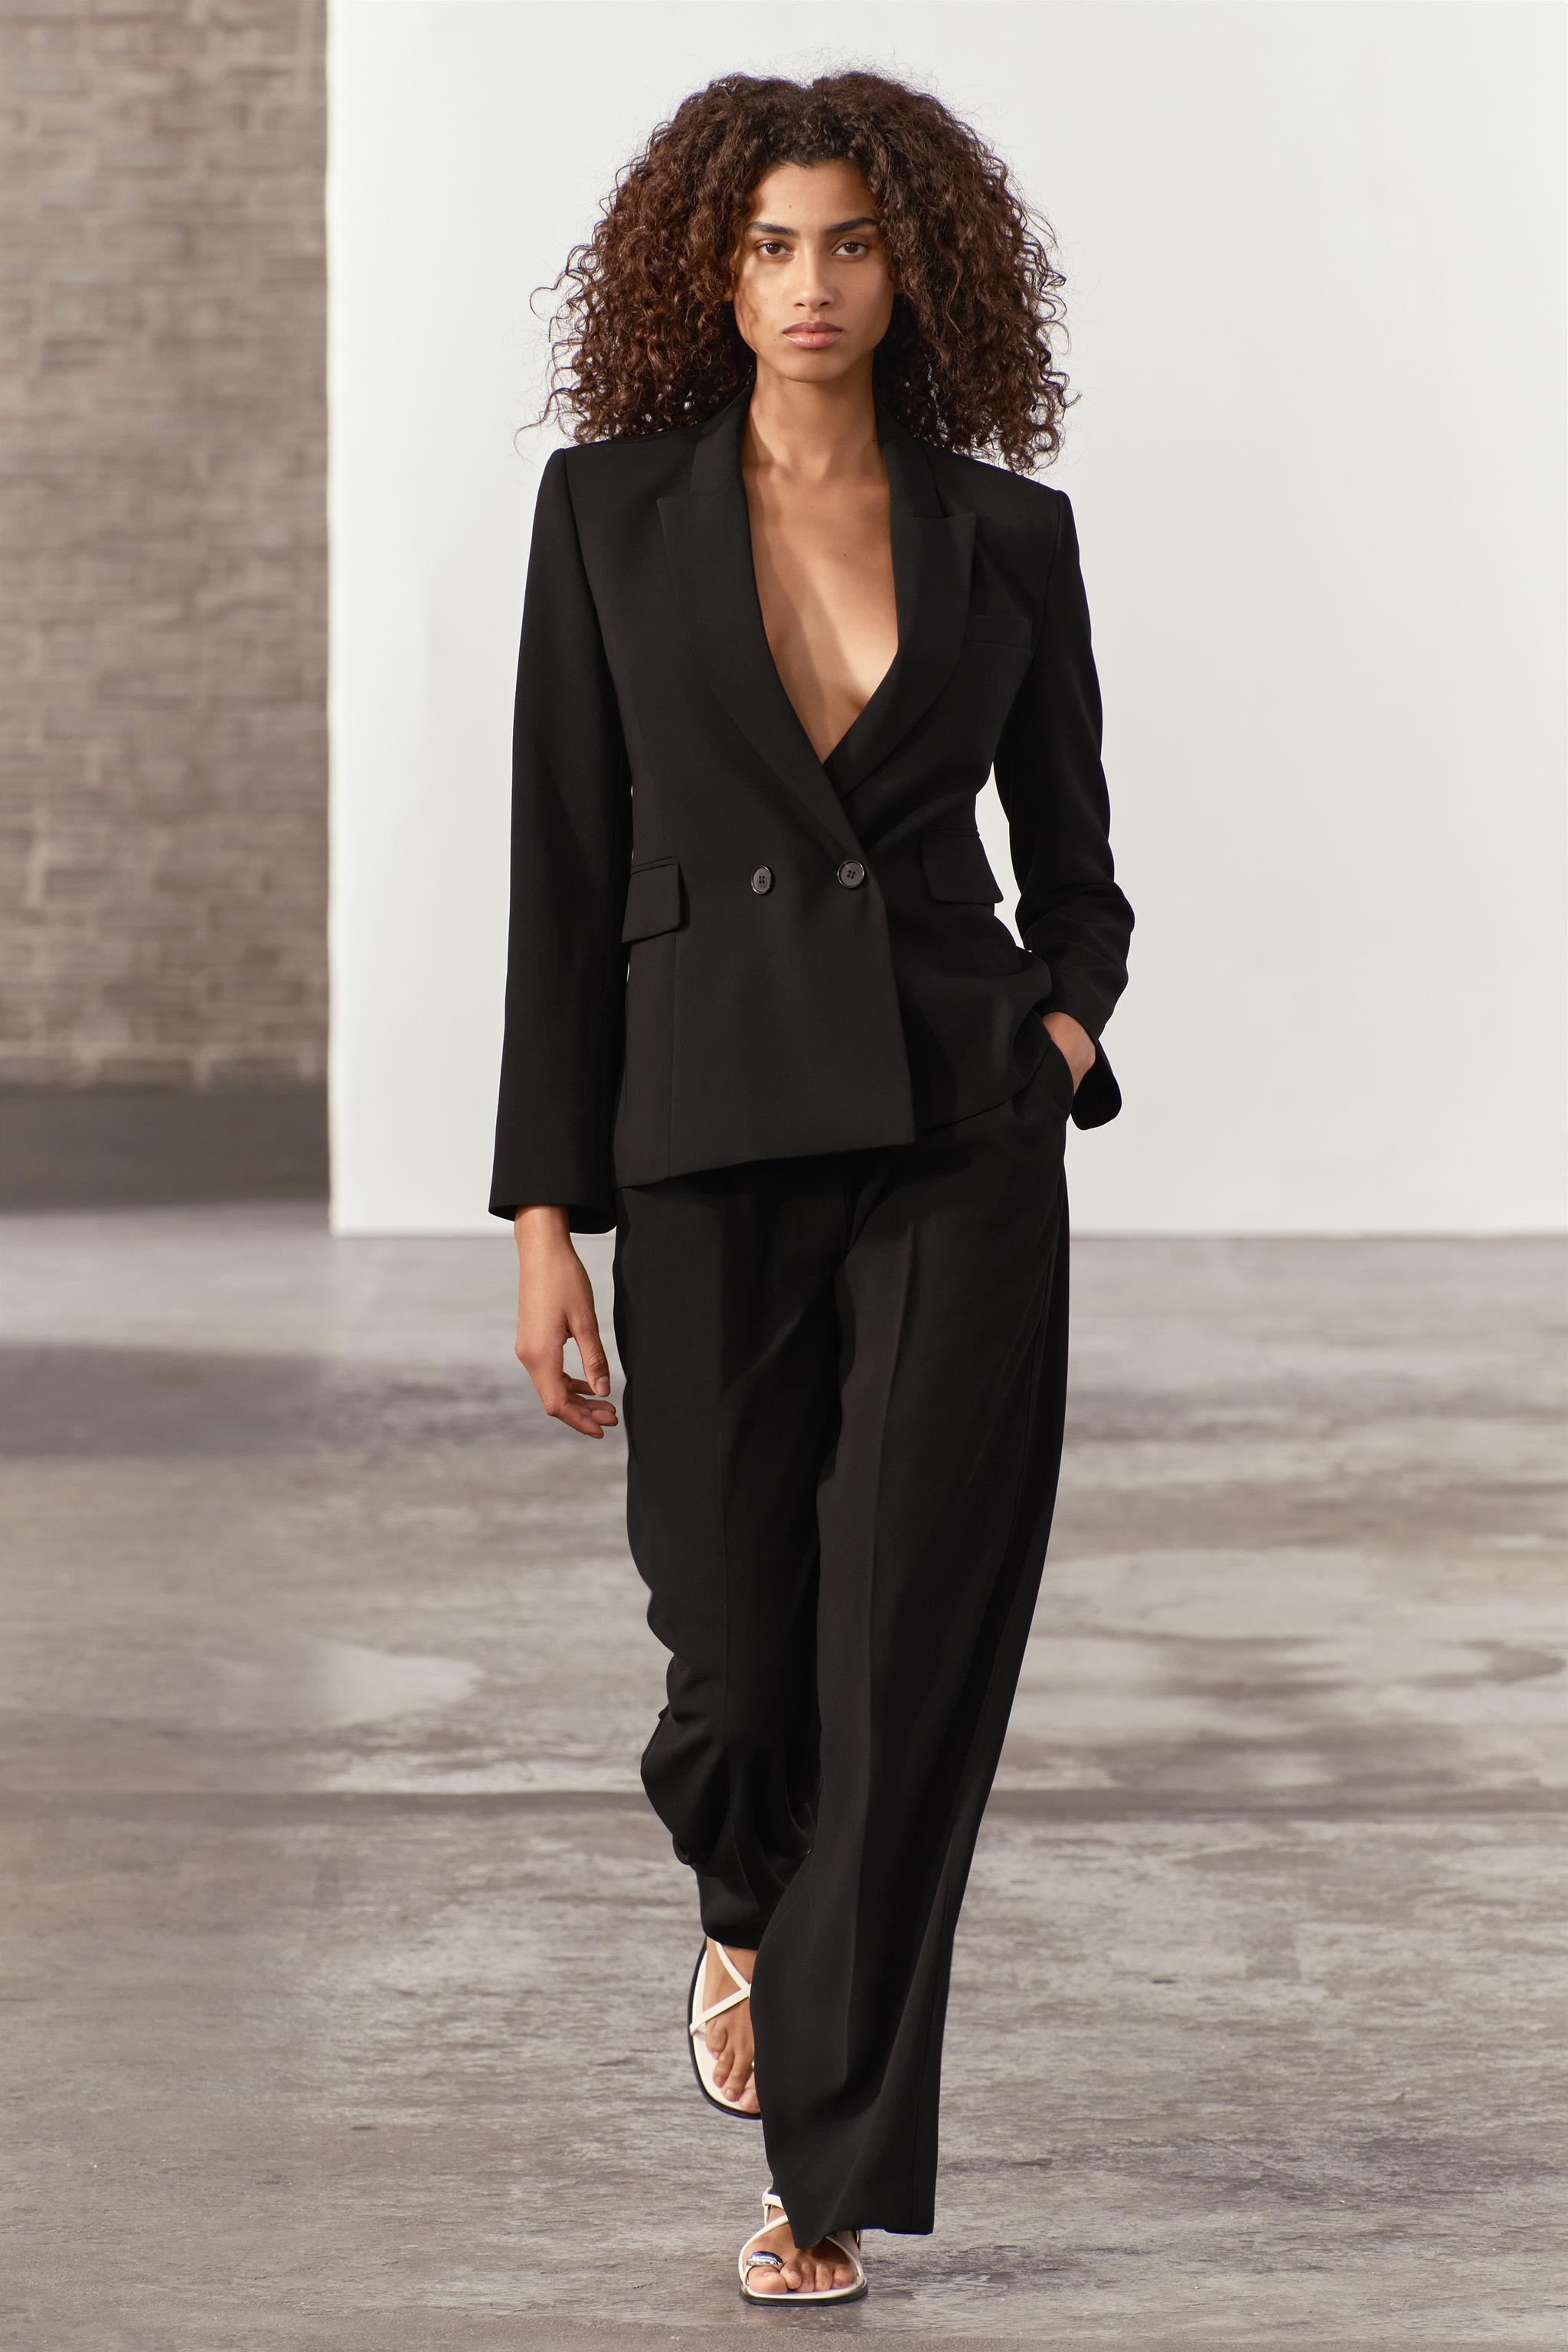 Zara Woman Mixed Stock lote de roupas - Portugal, Outlet - plataforma de  atacado